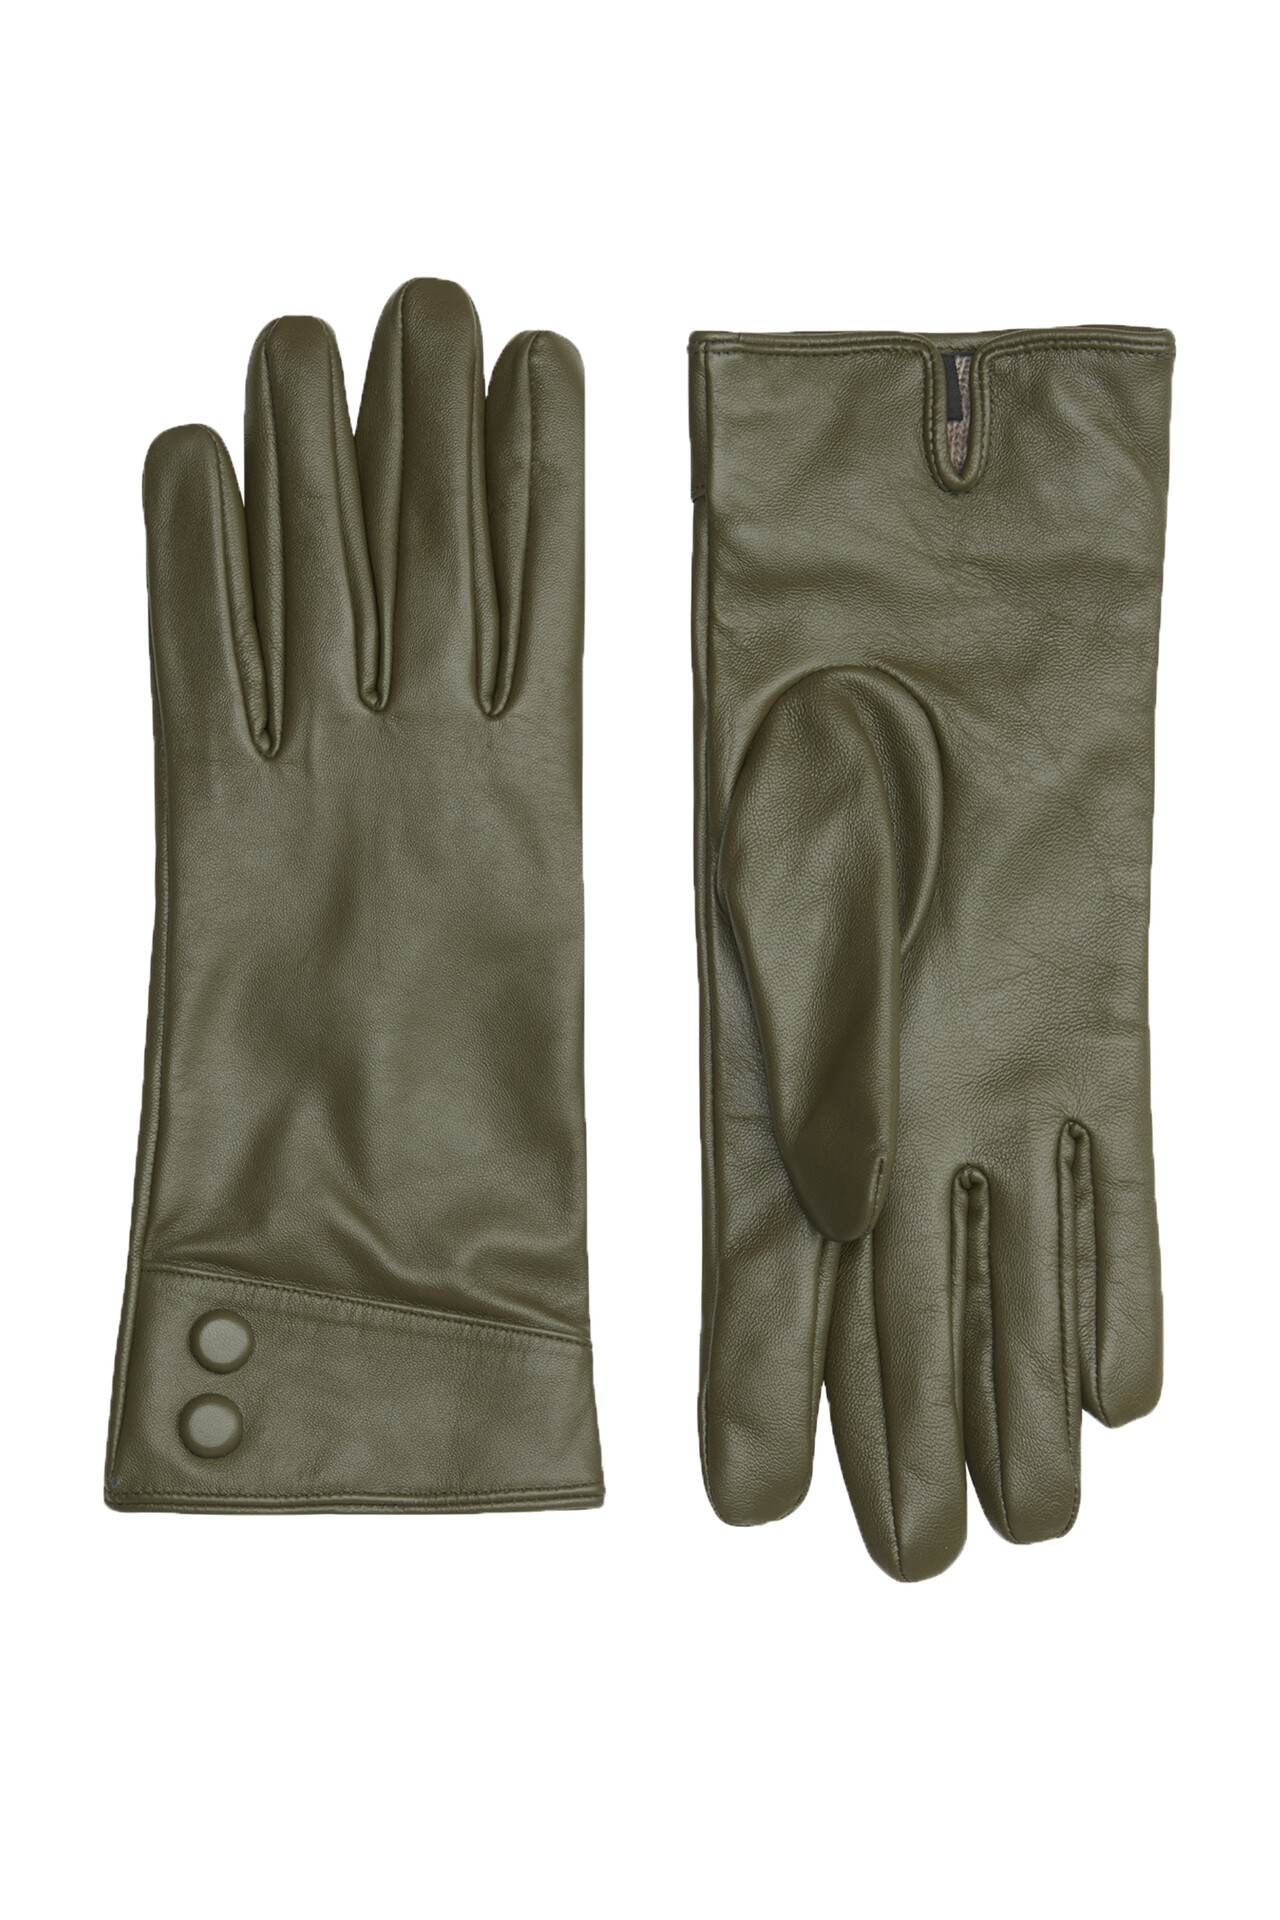 CRÉTON CRAGala handsker (OLIVE GREEN 8)